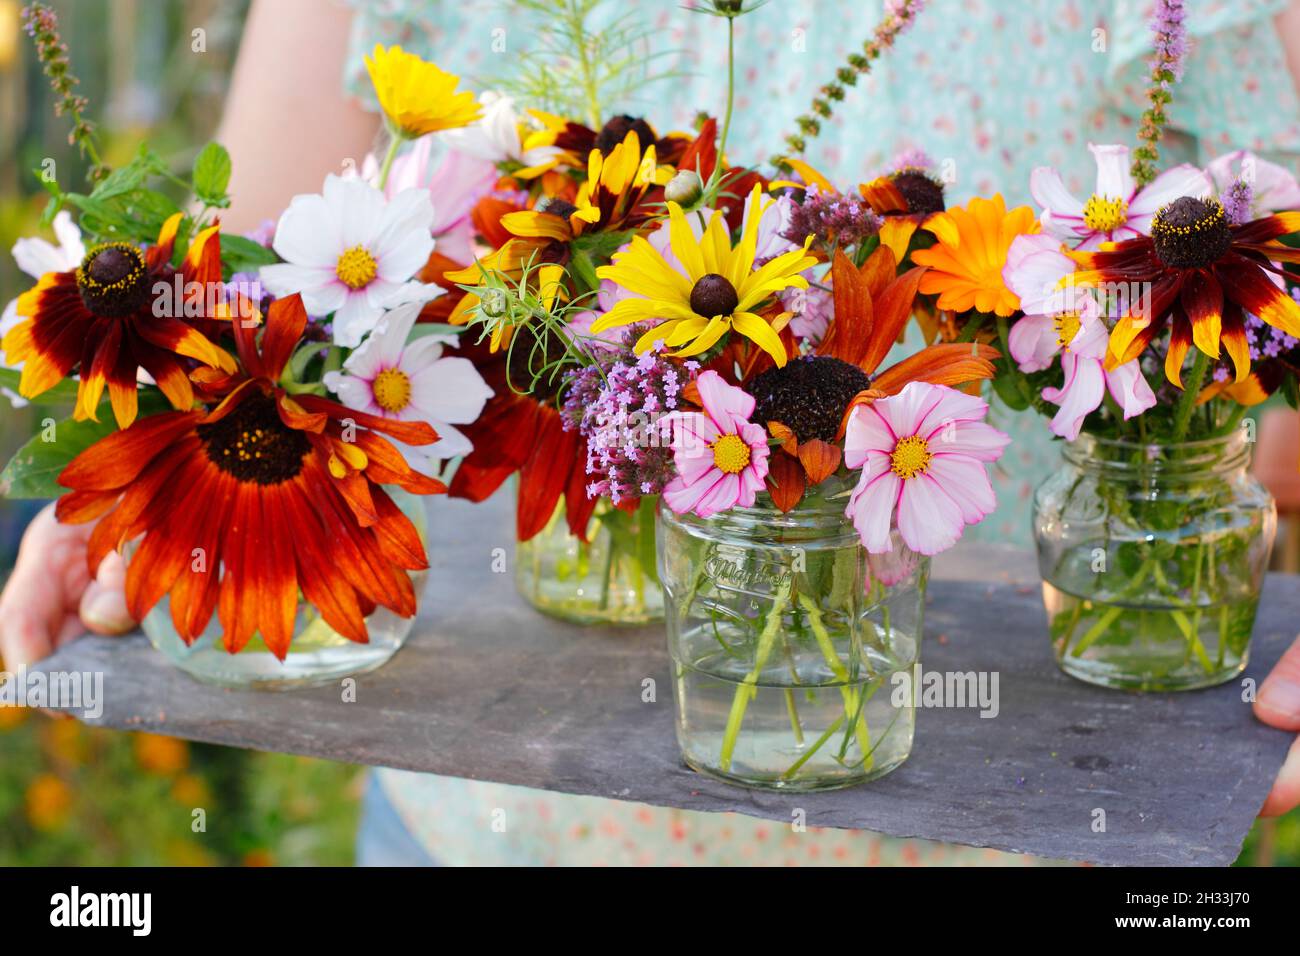 Femme avec des fleurs fraîches de son jardin de coupe - tournesol, rudbeckia, verbena, cosmos, menthe et pot marigold exposés dans des pots en verre recyclé.ROYAUME-UNI Banque D'Images